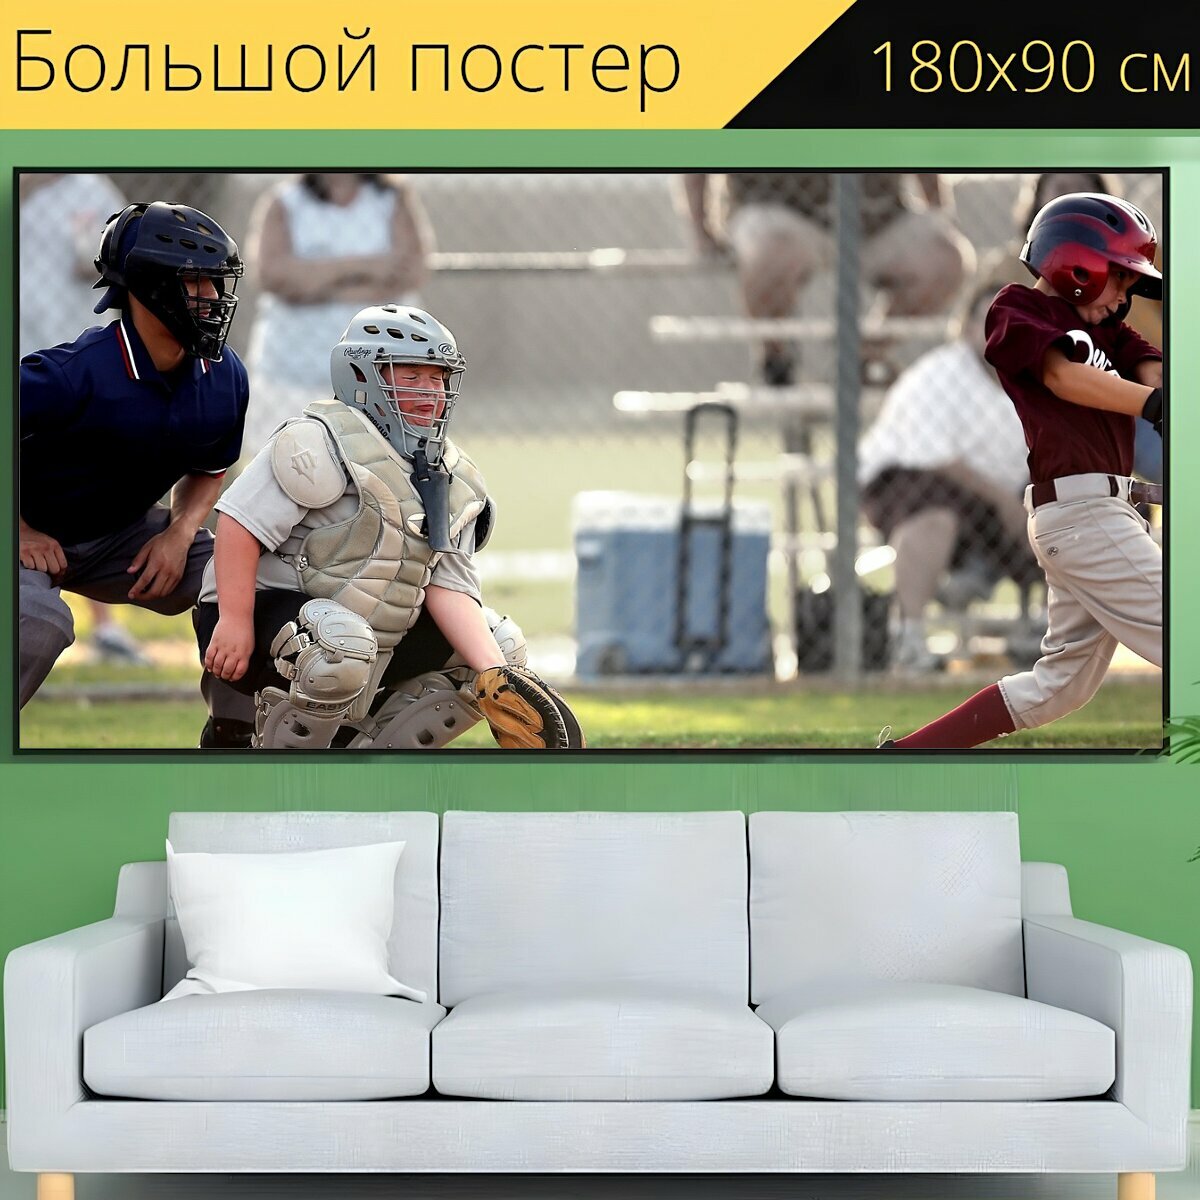 Большой постер "Бейсбол малая лига спорт" 180 x 90 см. для интерьера